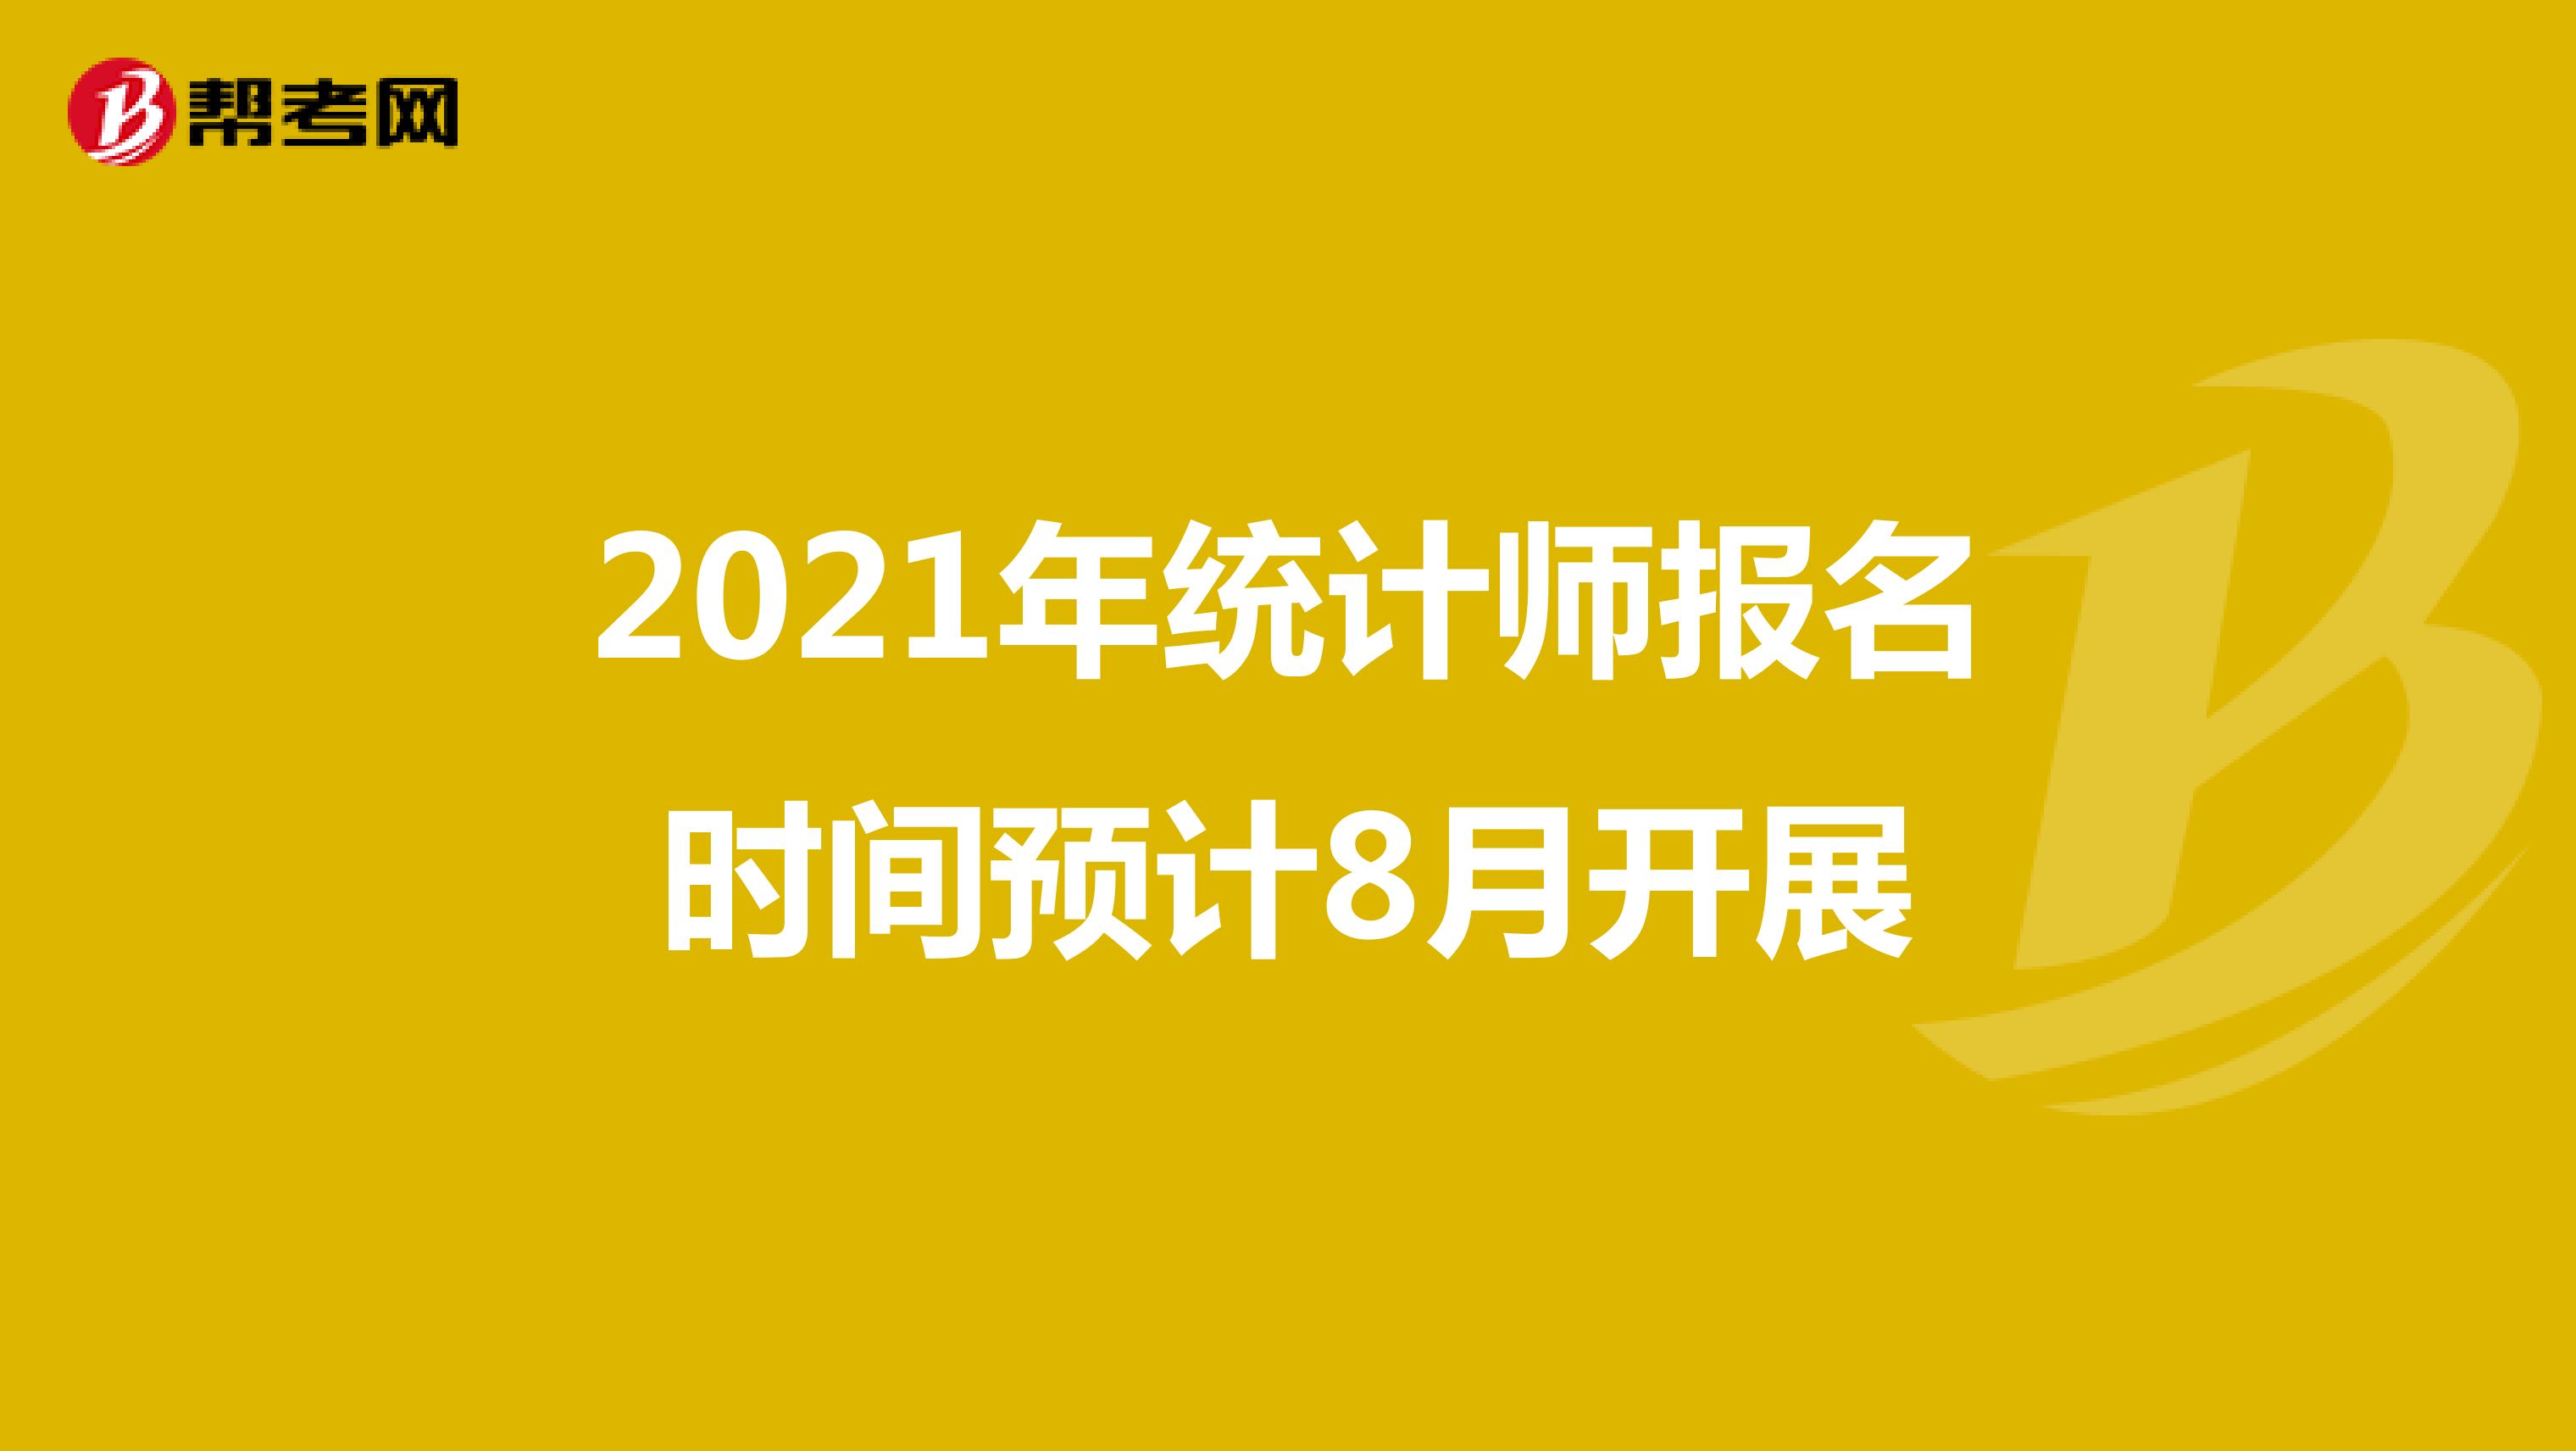 2021年统计师报名时间预计8月开展